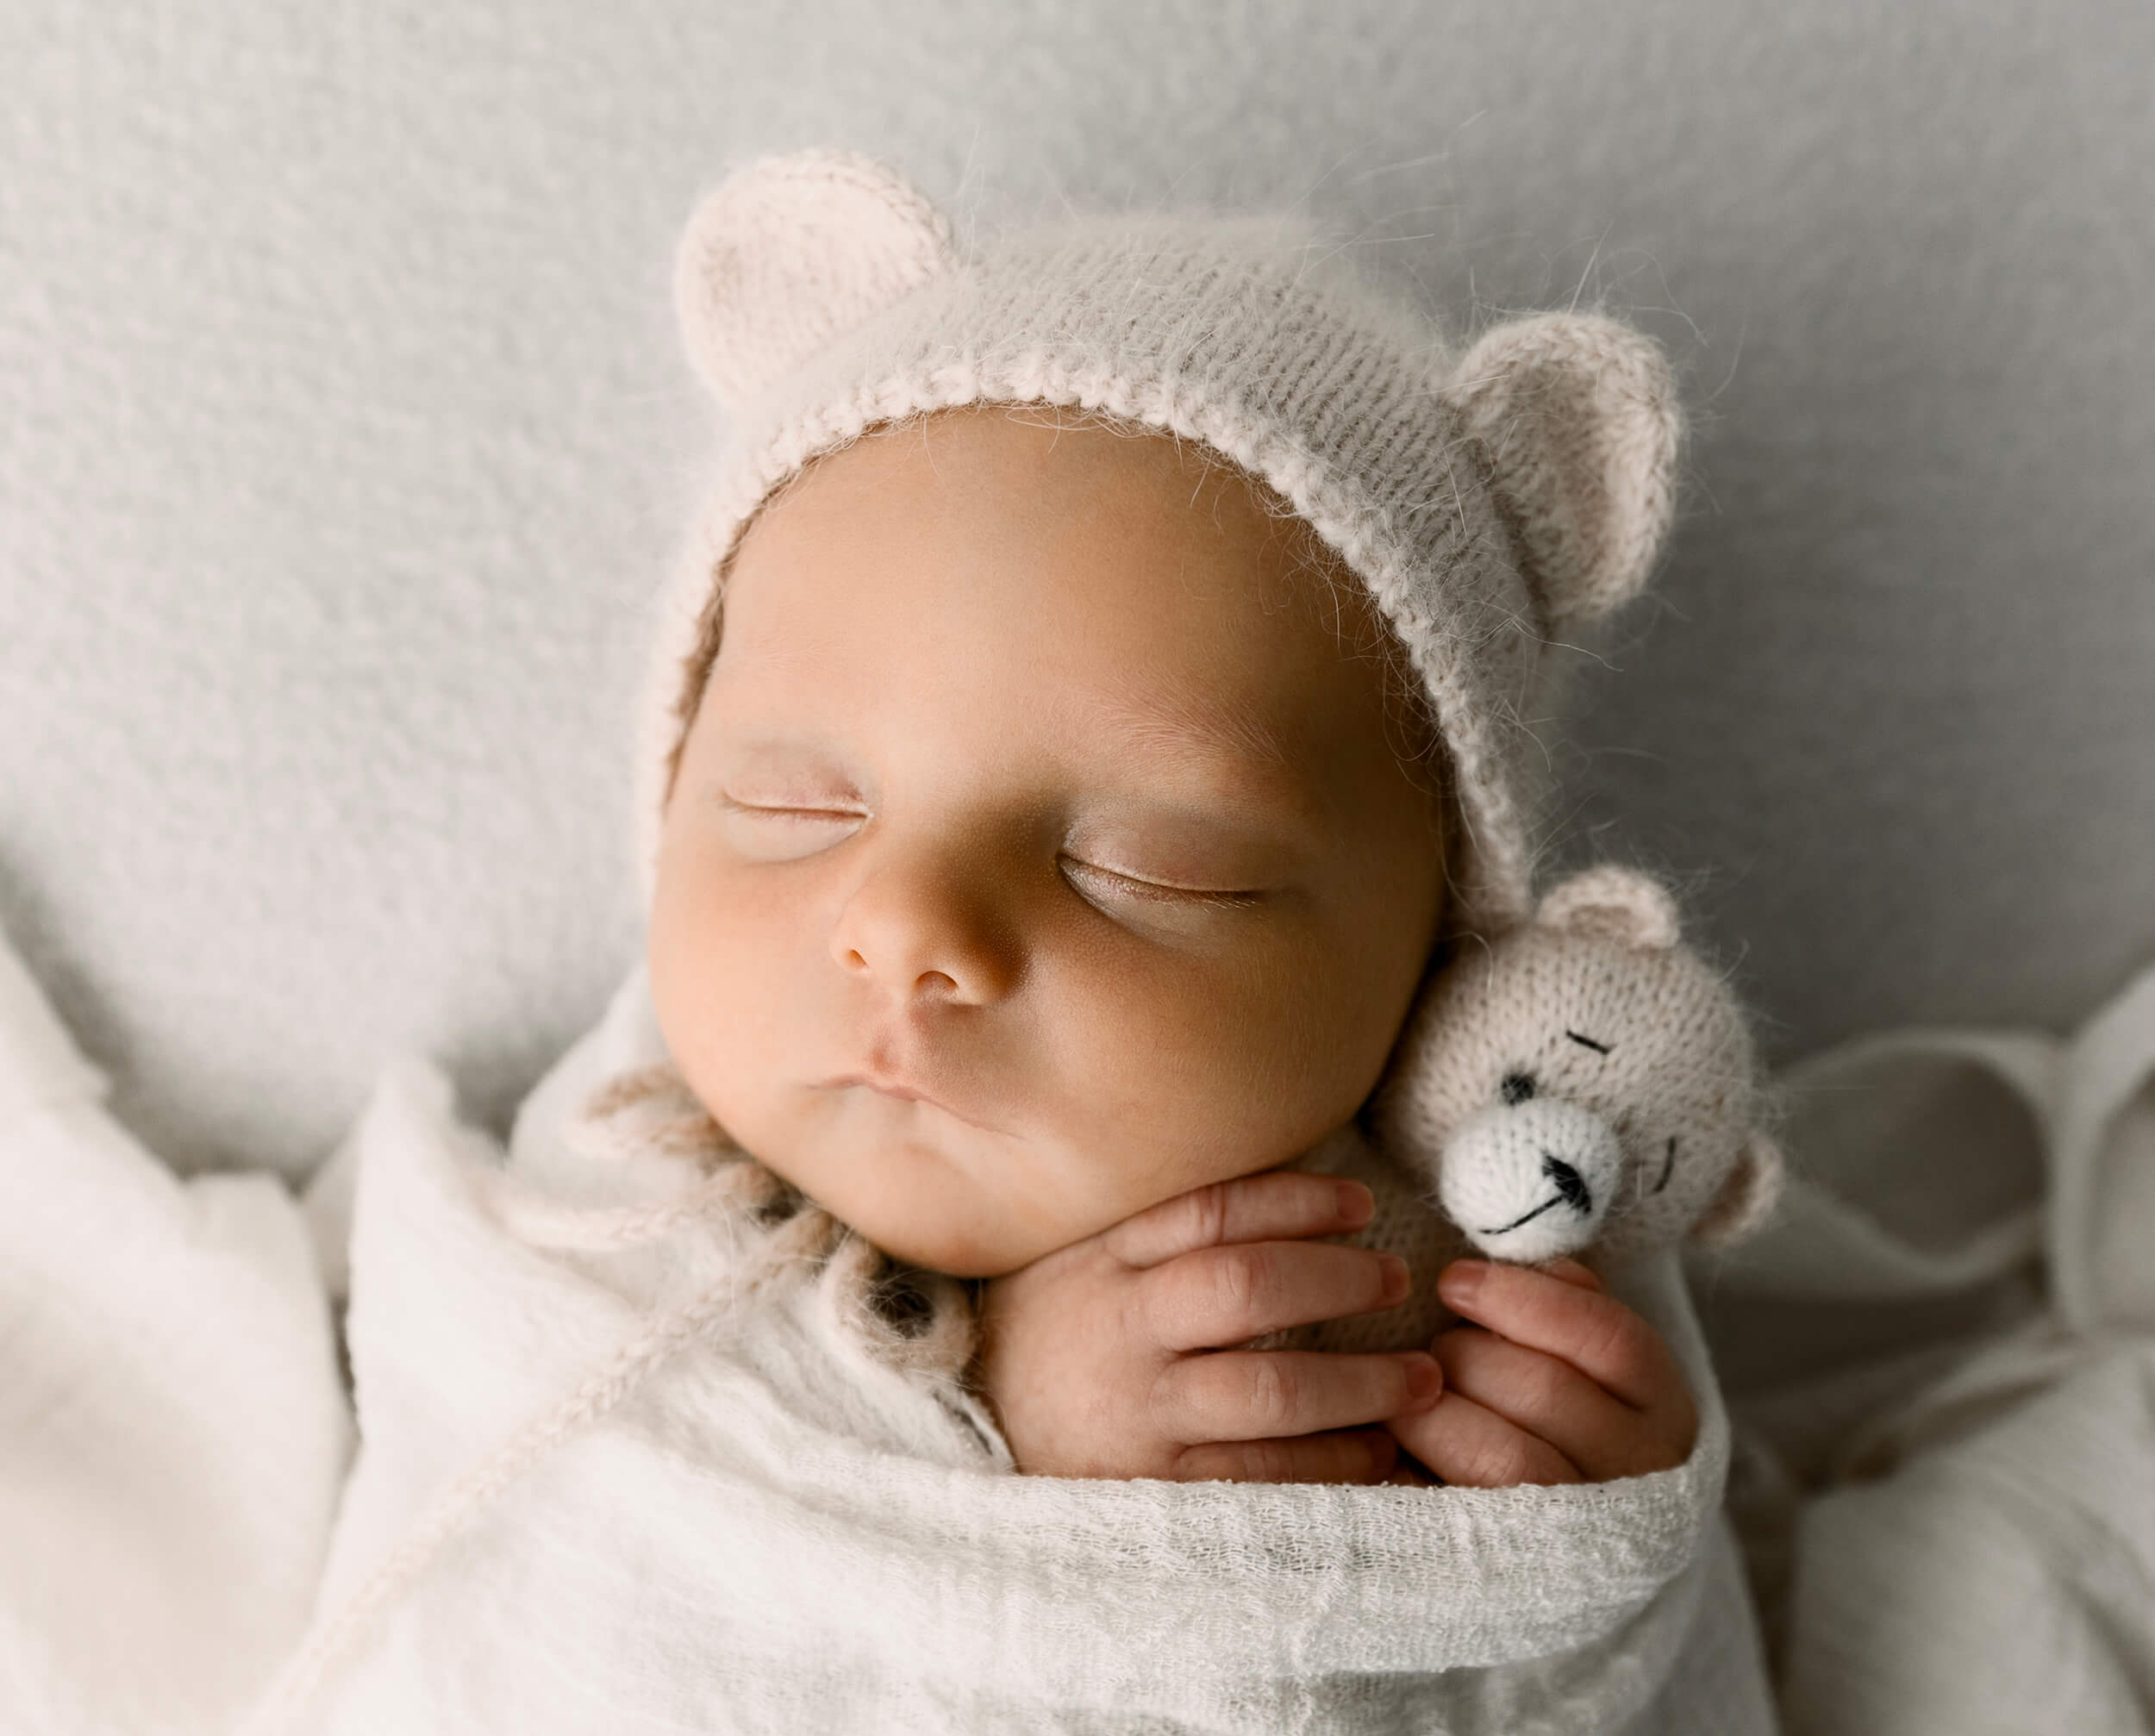 Baby boy holding a teddy bear with teddy bear bonnet